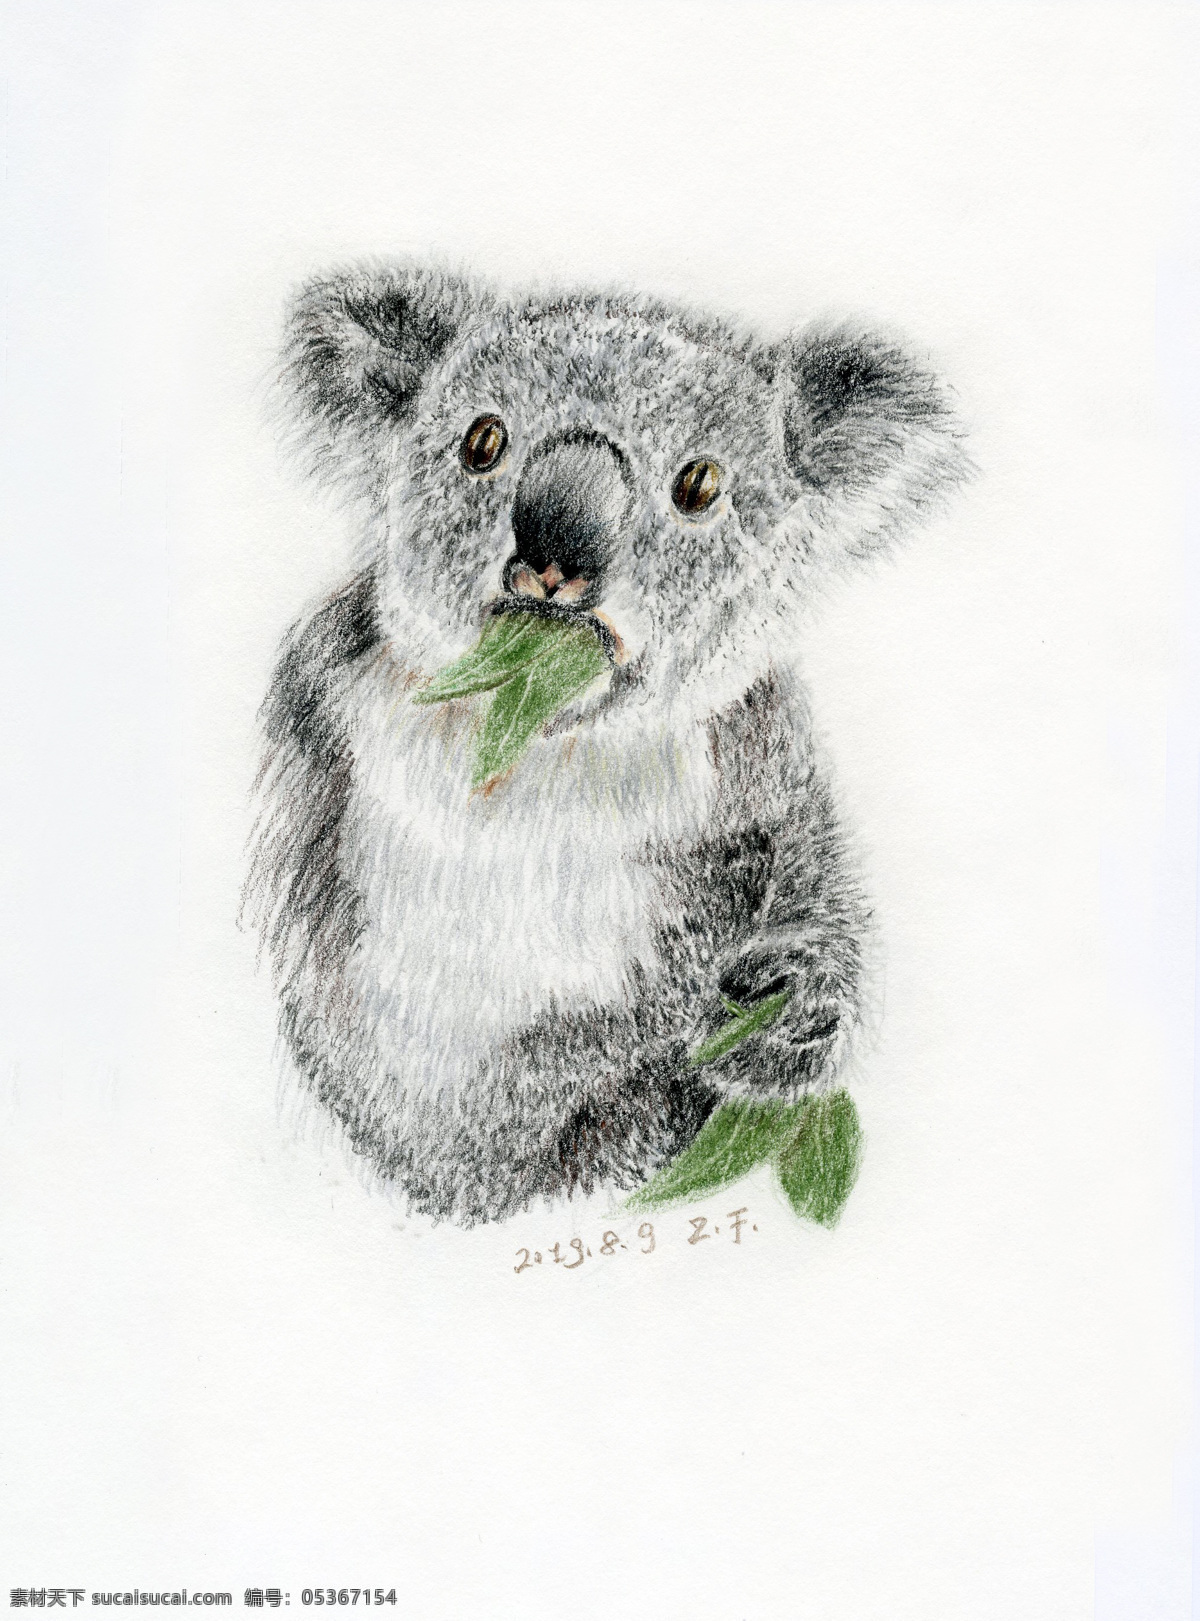 彩铅手绘 考拉 彩铅 手绘 树熊 动物 原创 绘图 文化艺术 绘画书法